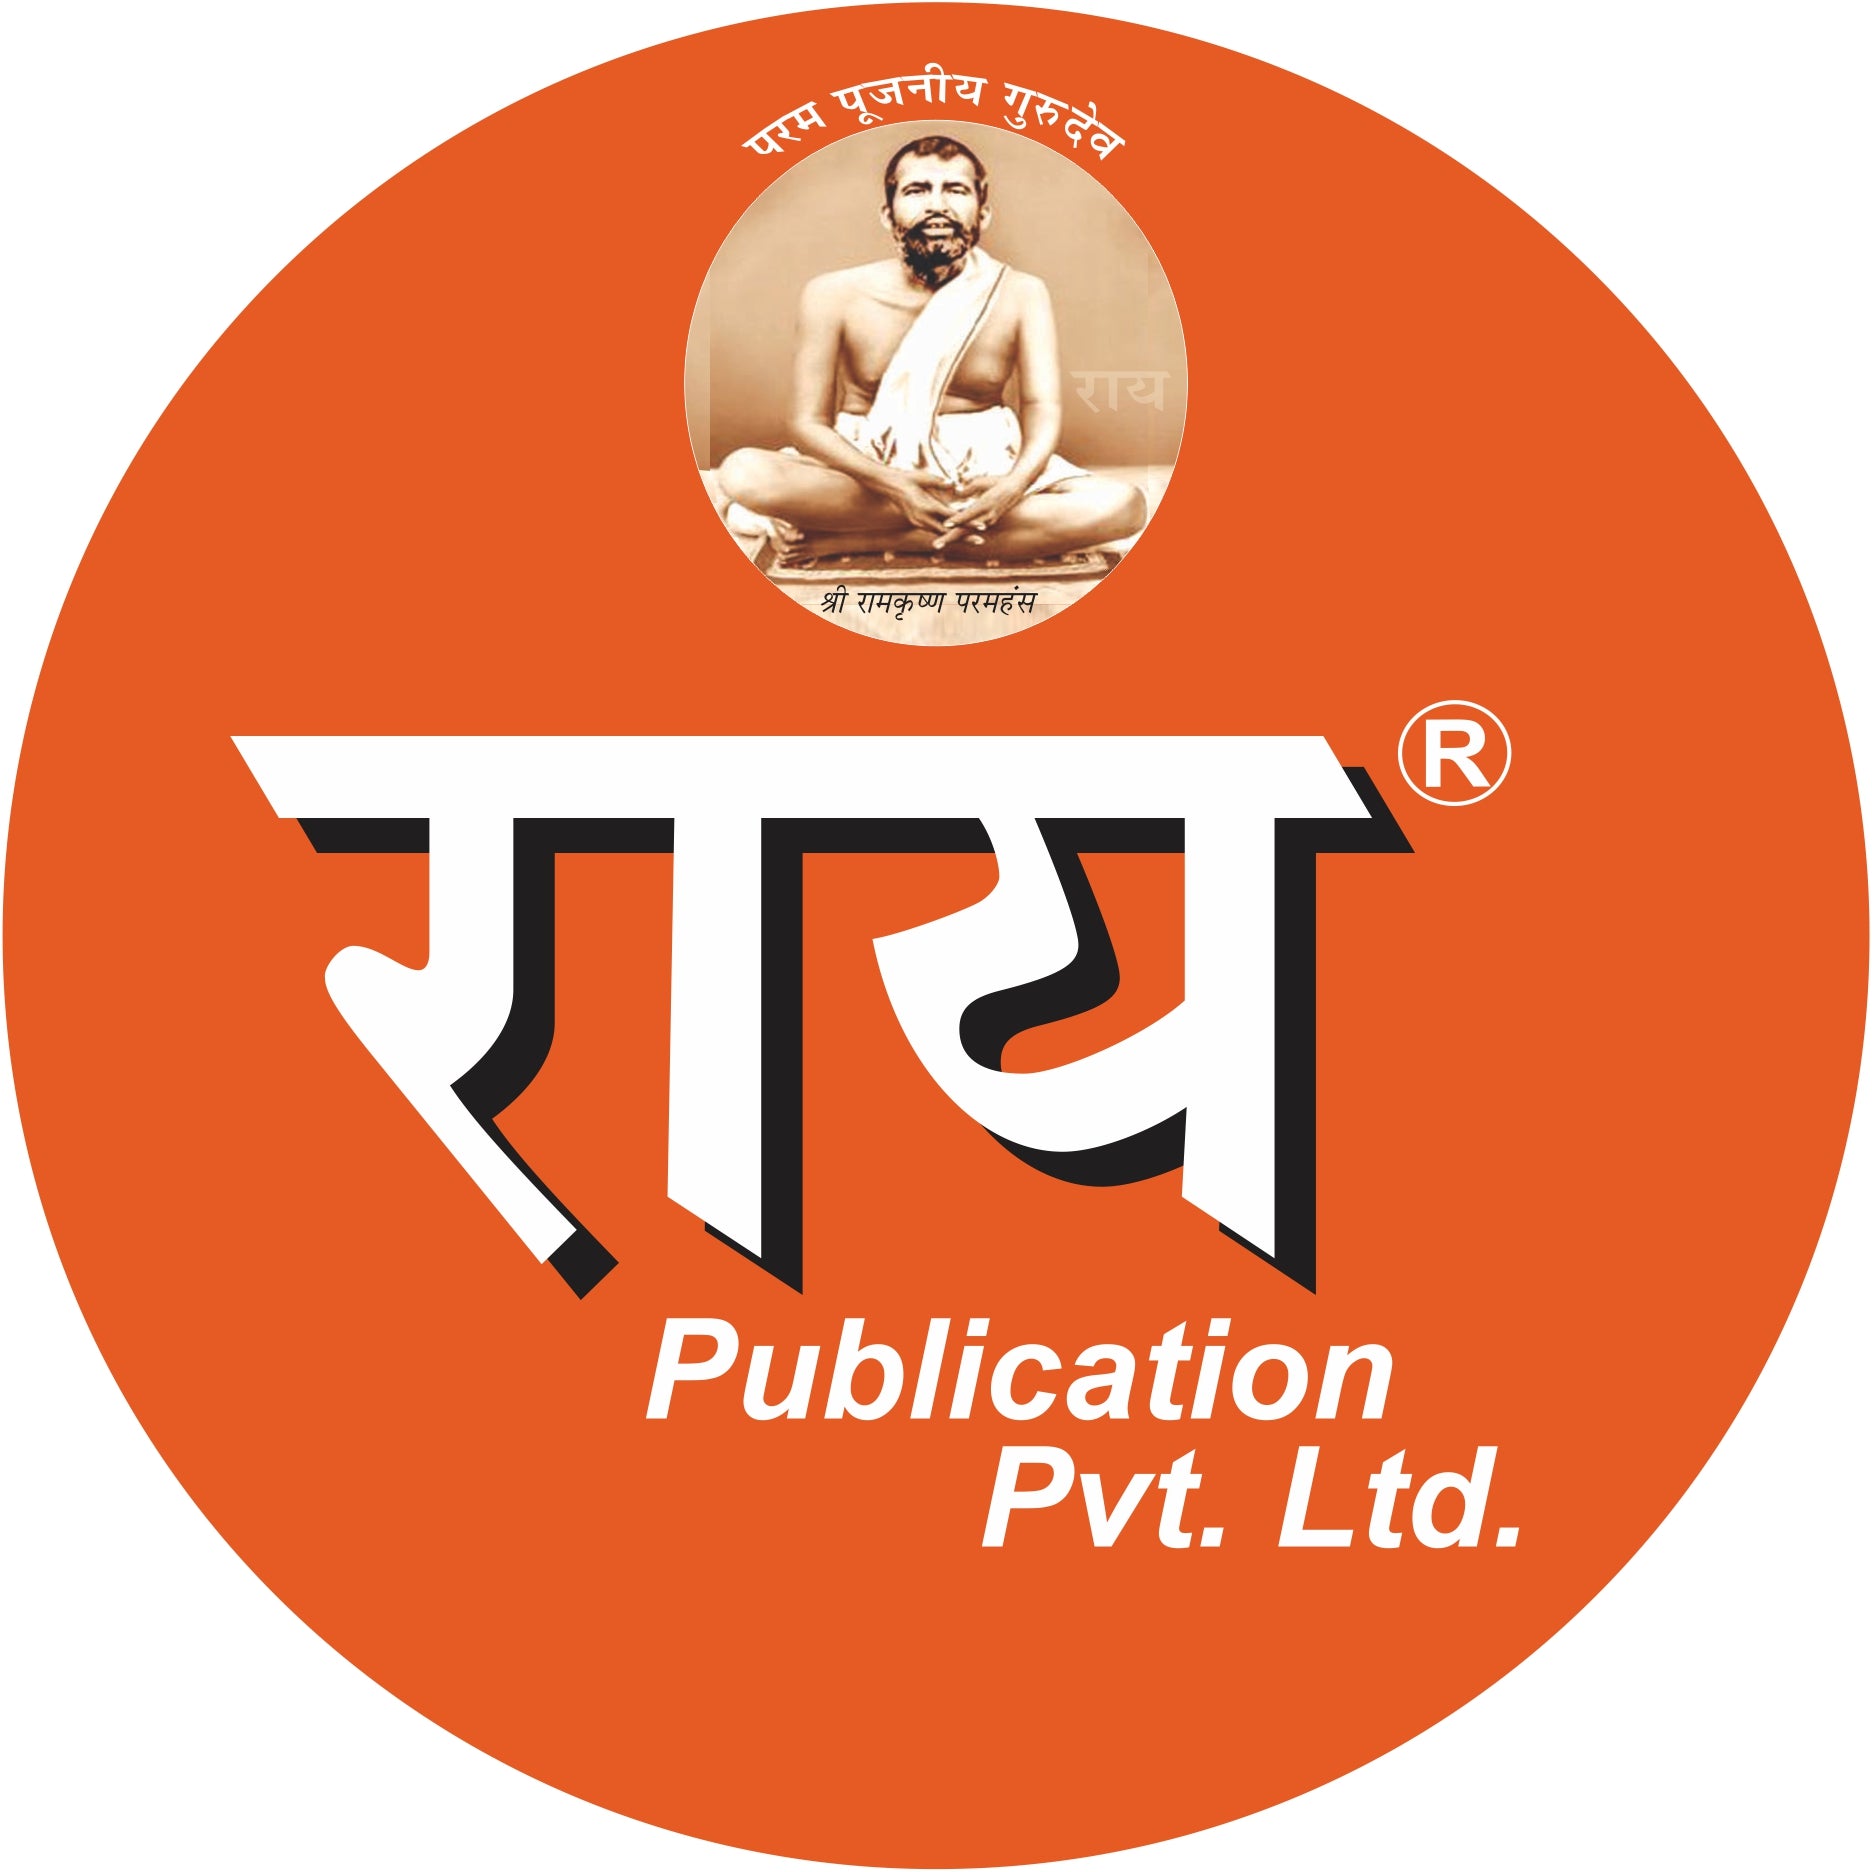 Rai Publications